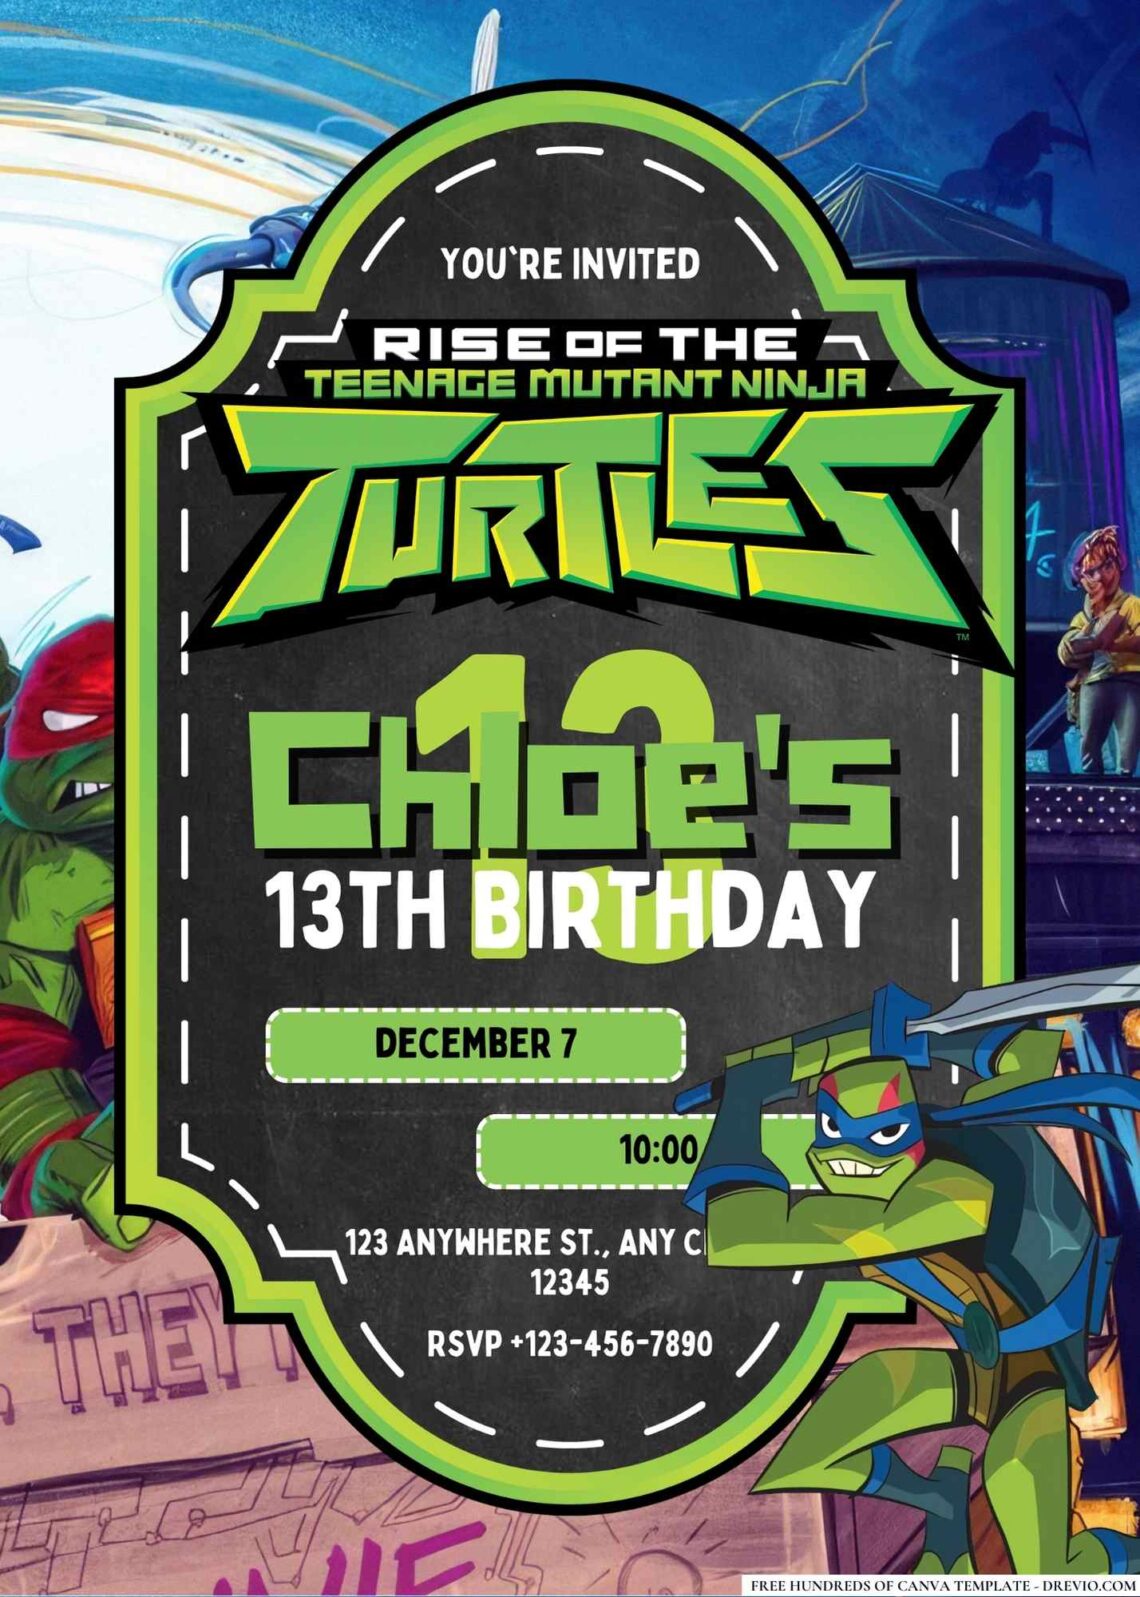 FREE Ninja Turtle Birthday Invitations